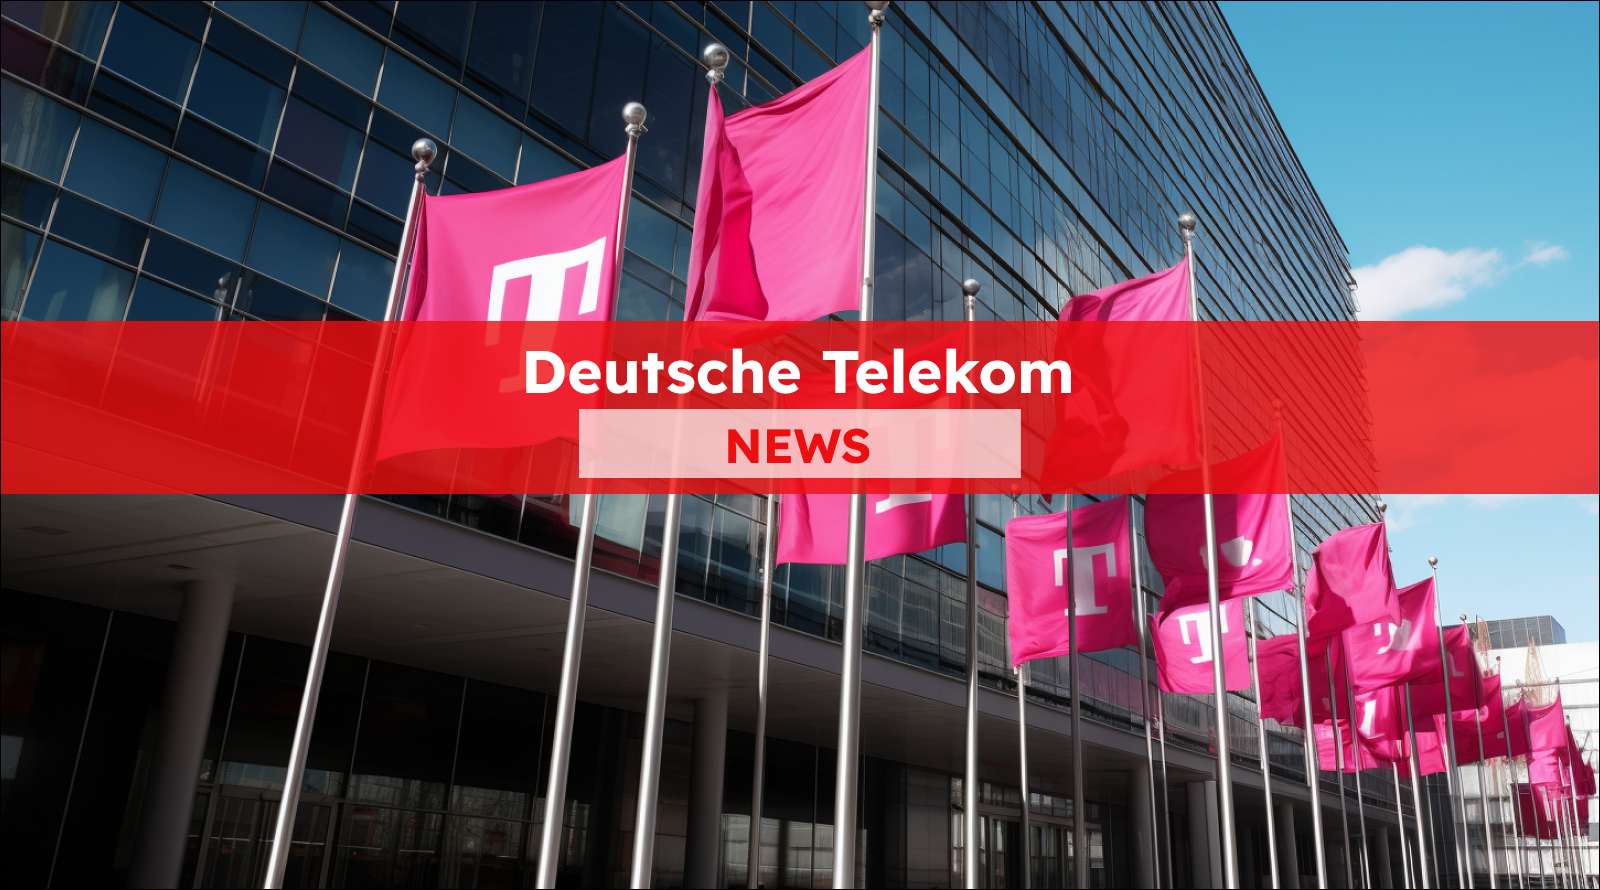 Veröffentliche ein Bild für einen Artikel über die Deutsche Telekom-Aktie